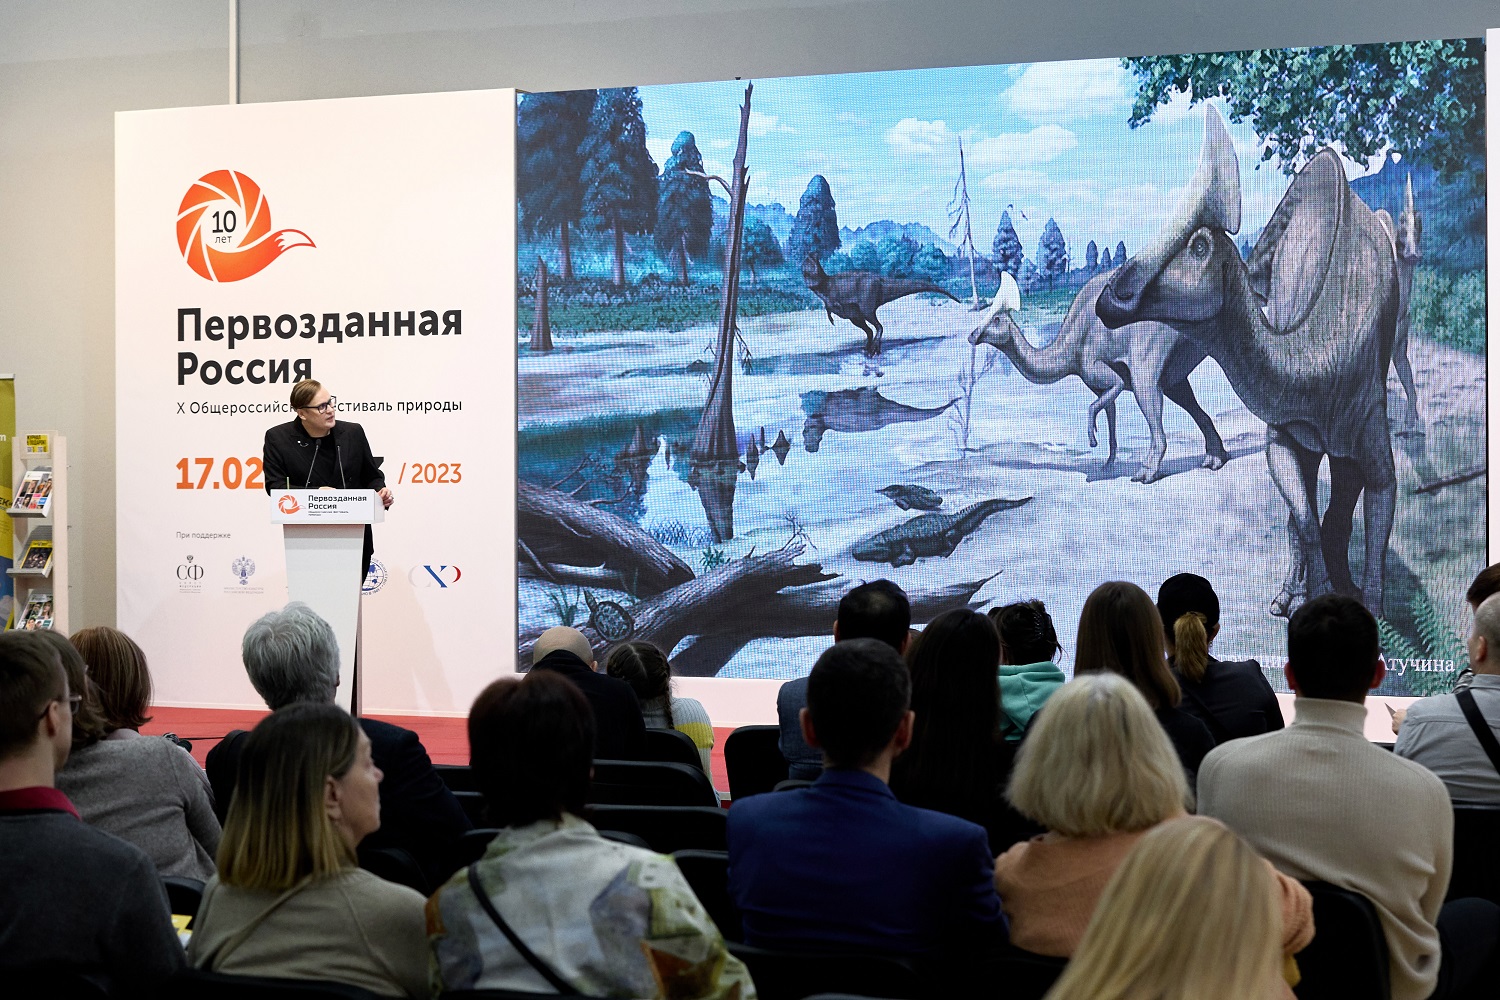 НИИРК – Представители журнала «Человек и мир. Диалог» выступили с лекциями на X Общероссийском фестивале природы «Первозданная Россия»